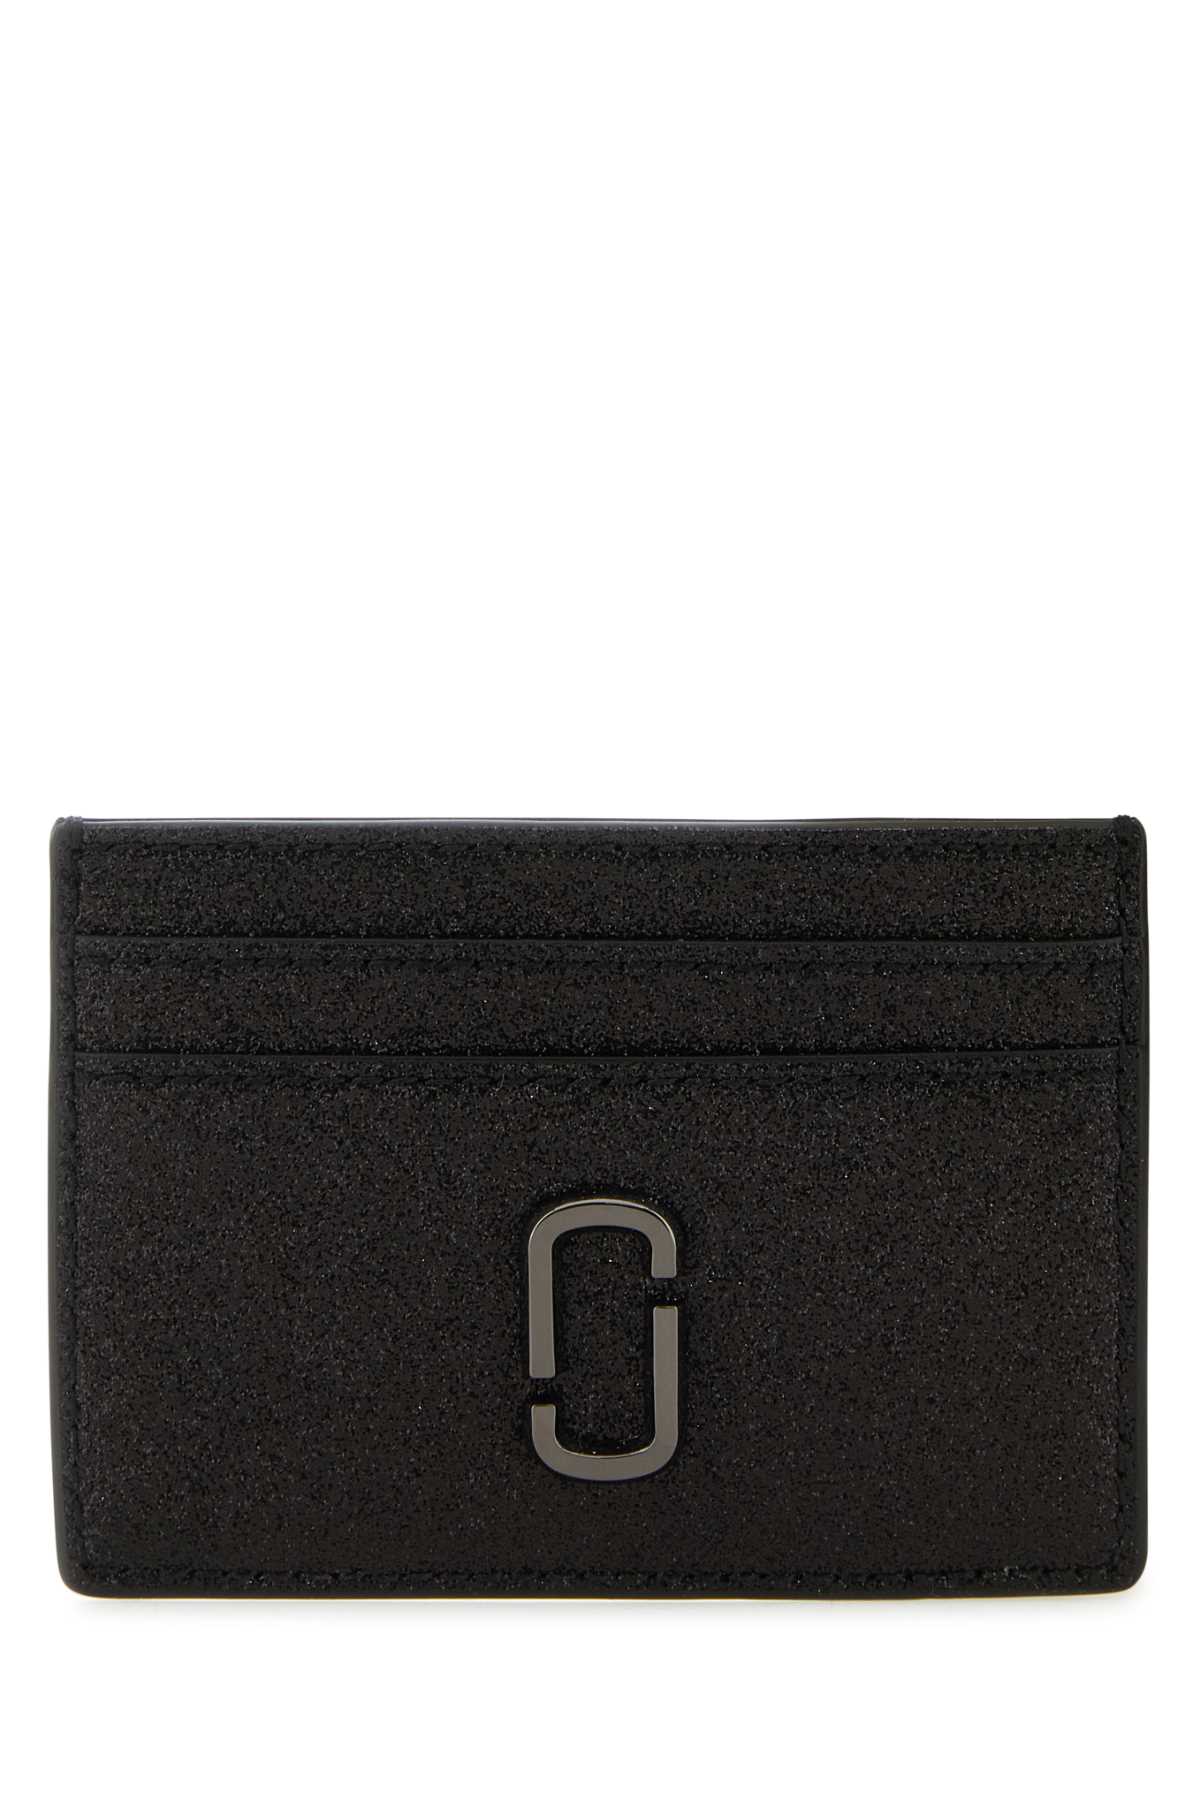 Shop Marc Jacobs Black Leather J Marc Card Holder